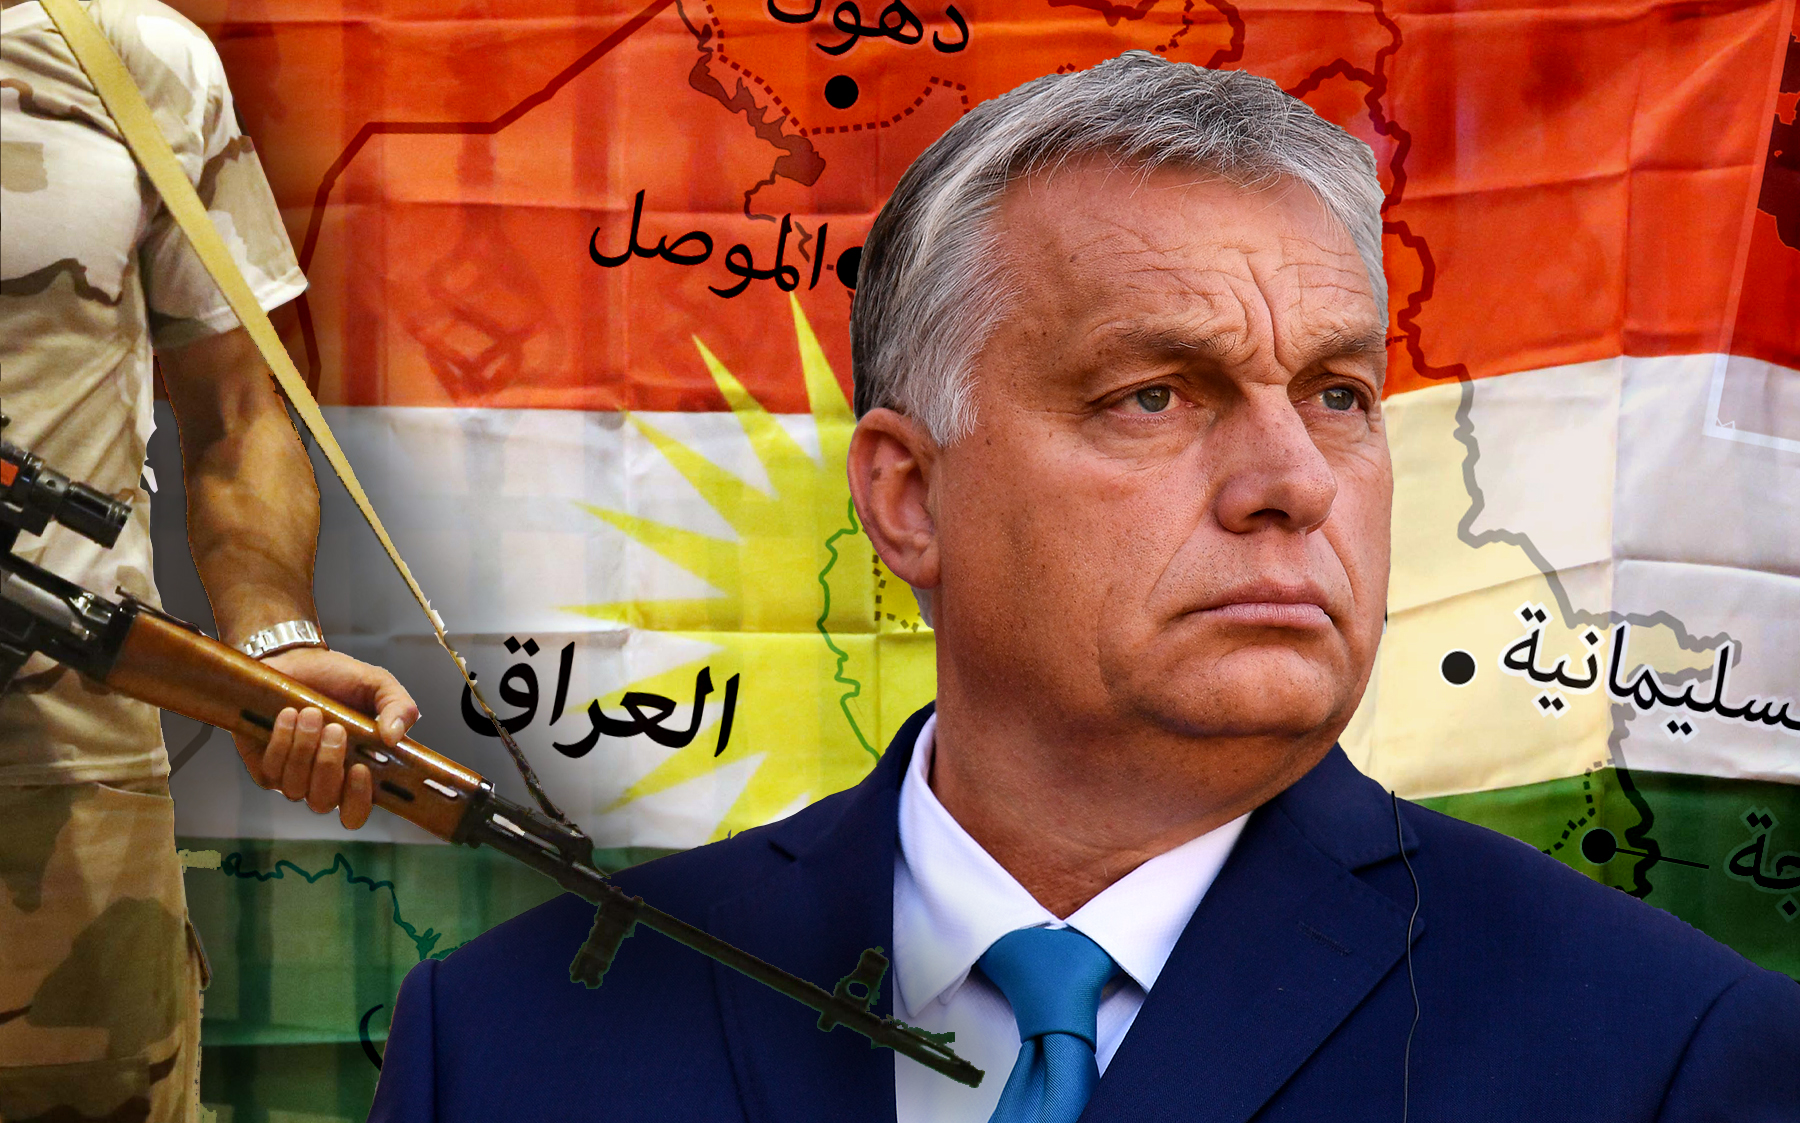 Orbán 2015-ben: „Stabil kurd régió nélkül Európában sem lehet stabilitást teremteni”